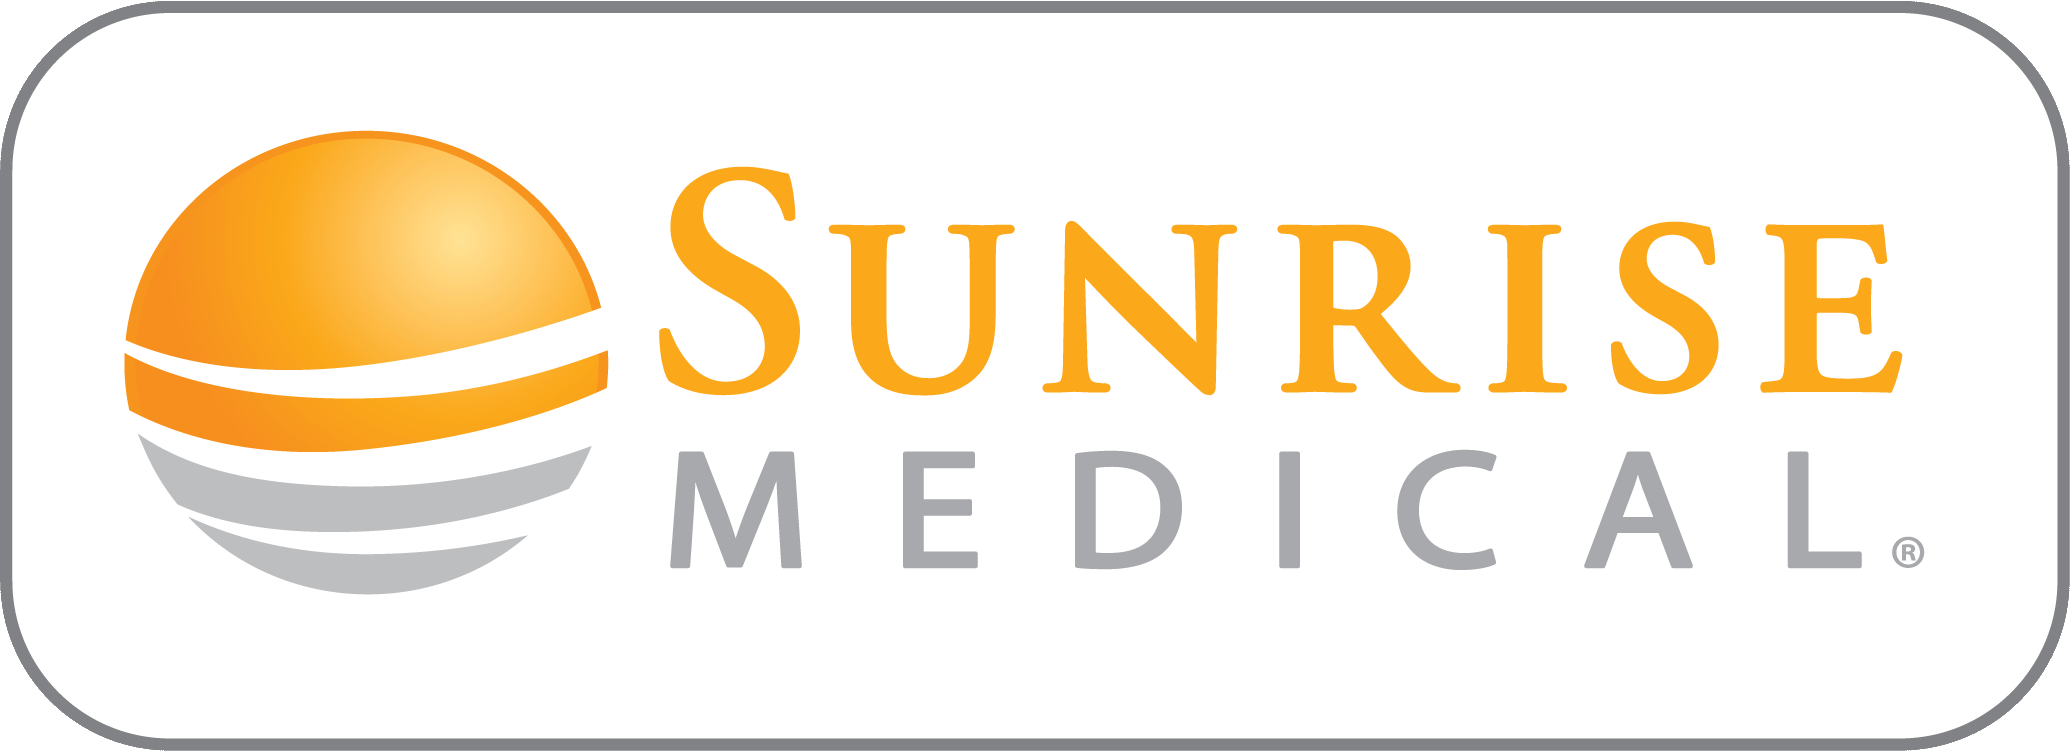 Orange Medical Logo - New Branding